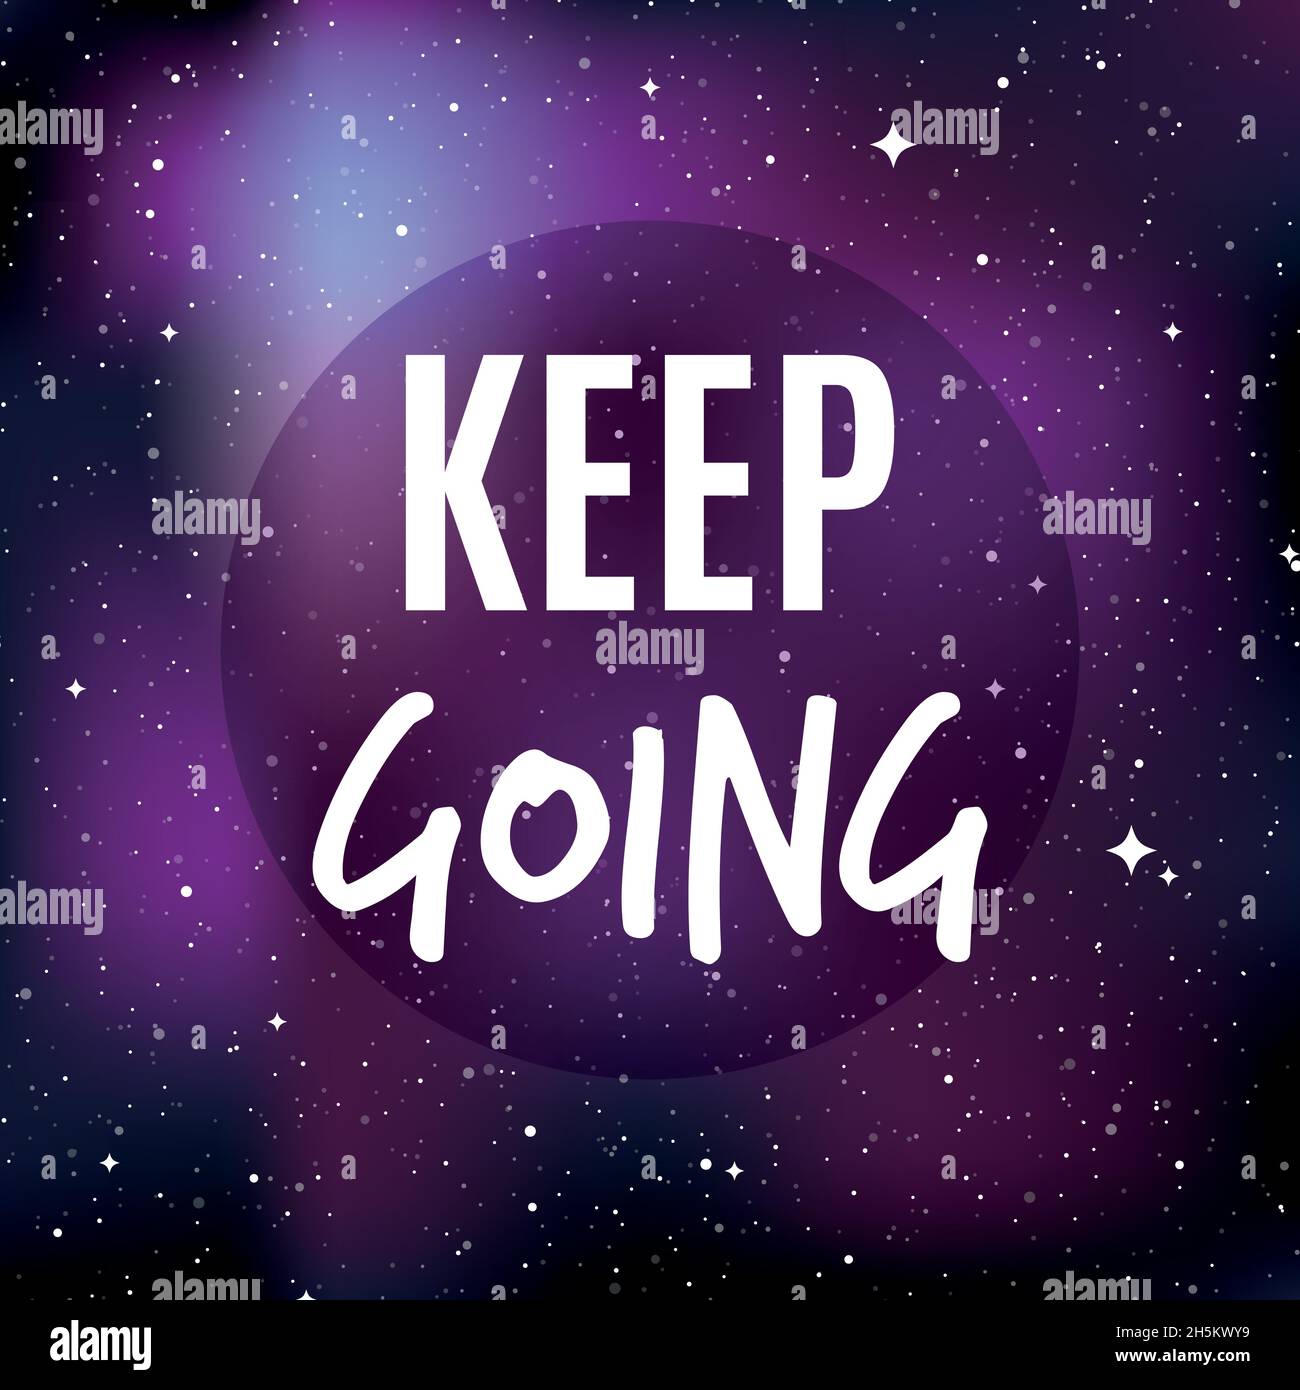 Hintergrund des Sternenuniversums. Zitat: „Keep going“. Konzept von Galaxie, Raum, Kosmos, Nebel, Weltraumstaub. Vektorgrafik Stock Vektor